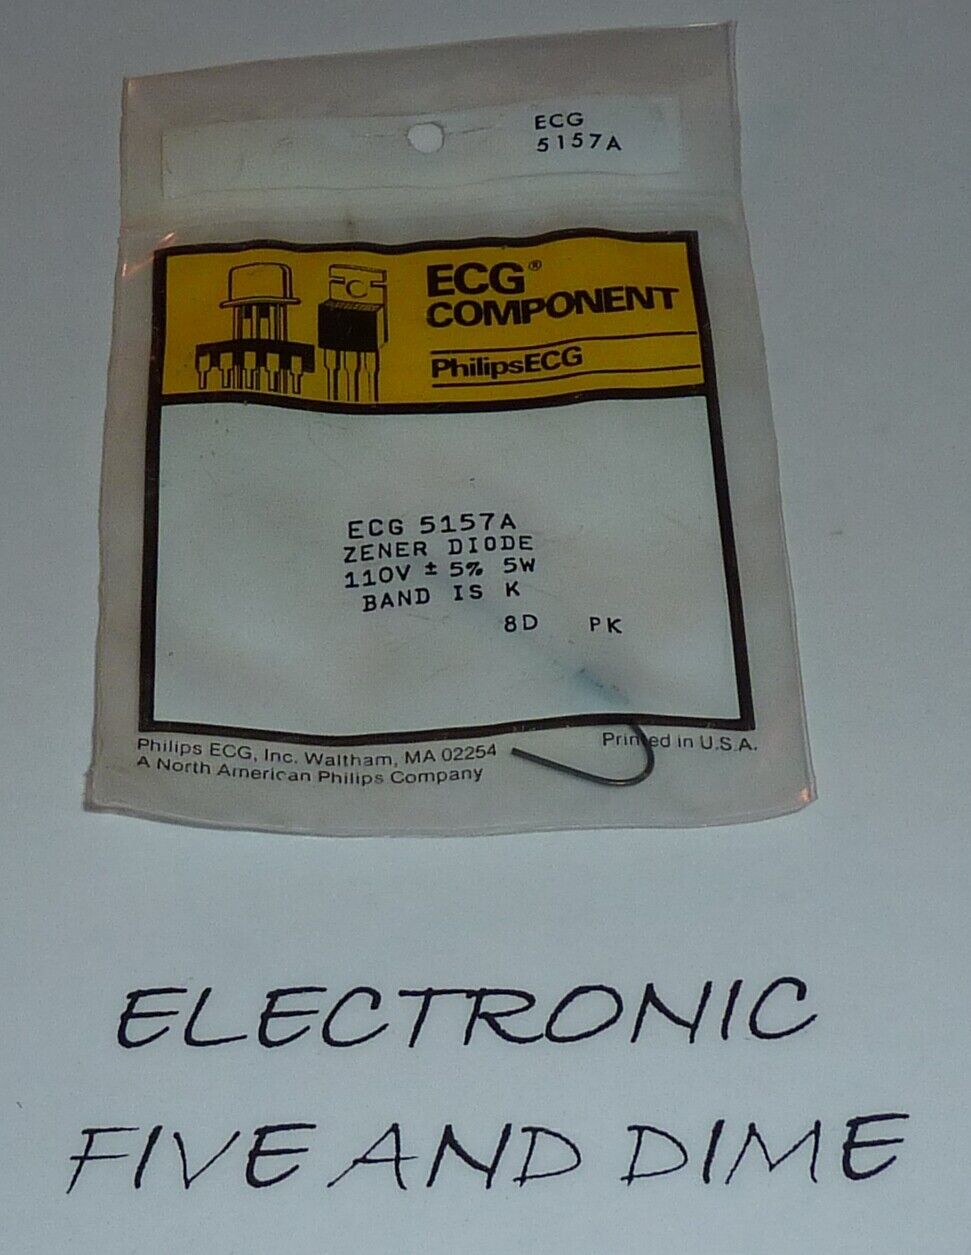 ECG5157A	ZD-110.0 V 5W